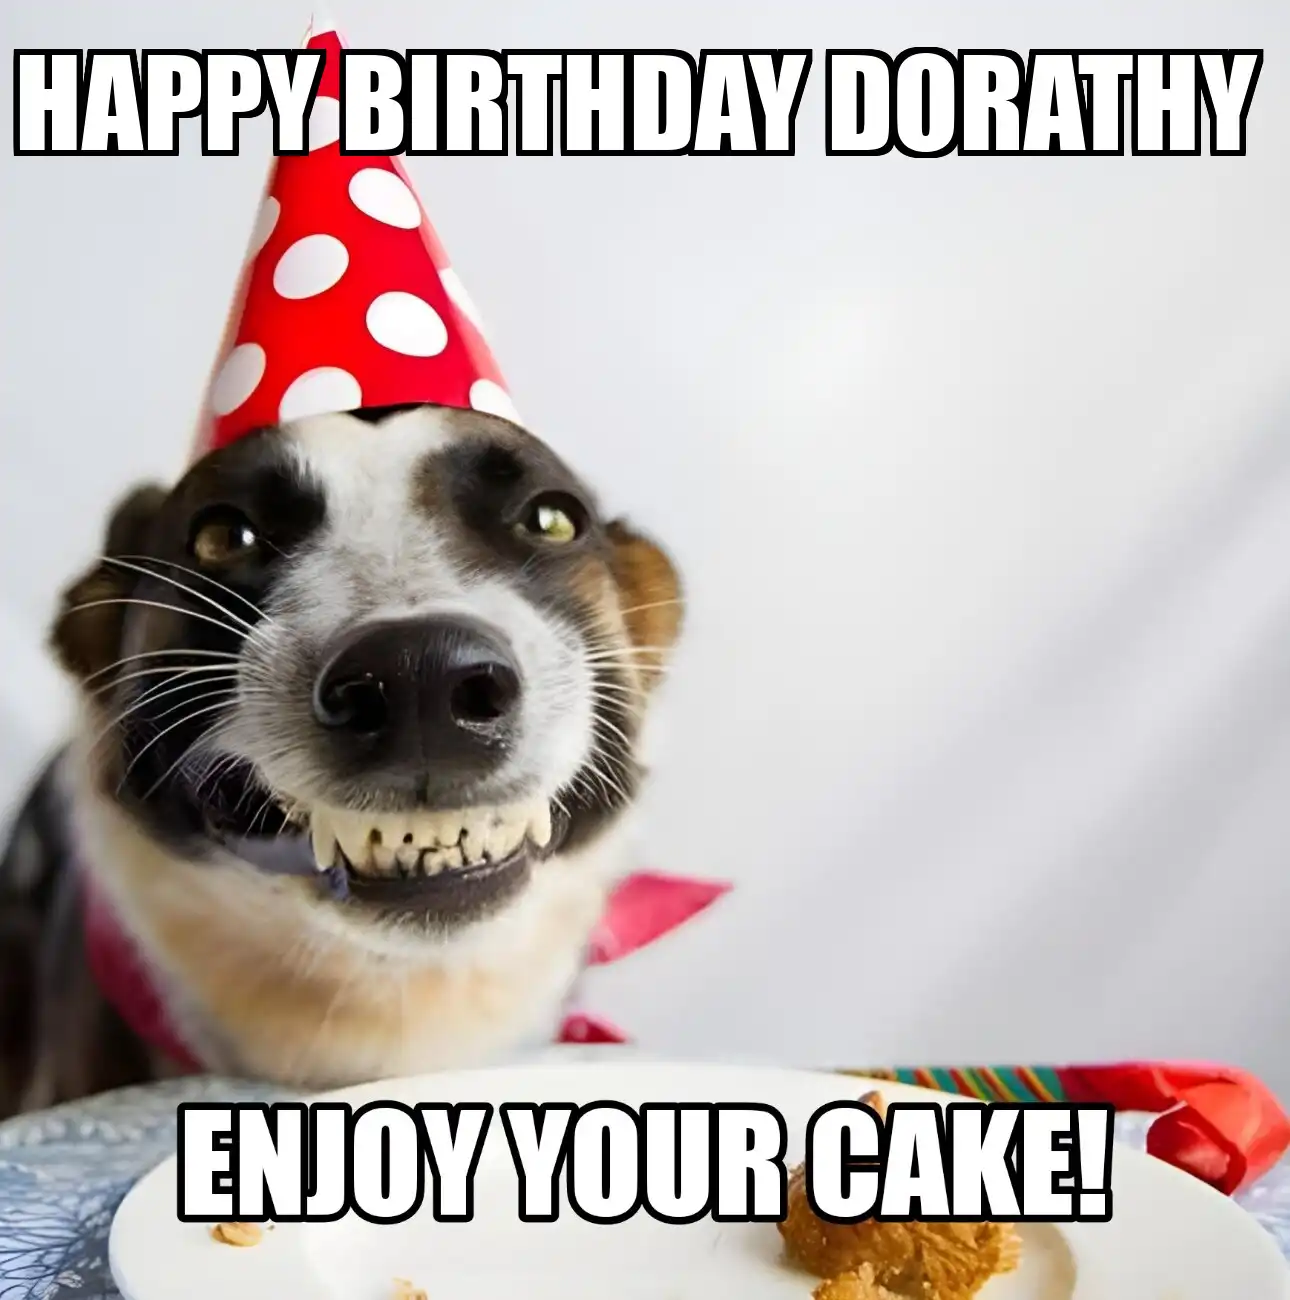 Happy Birthday Dorathy Enjoy Your Cake Dog Meme